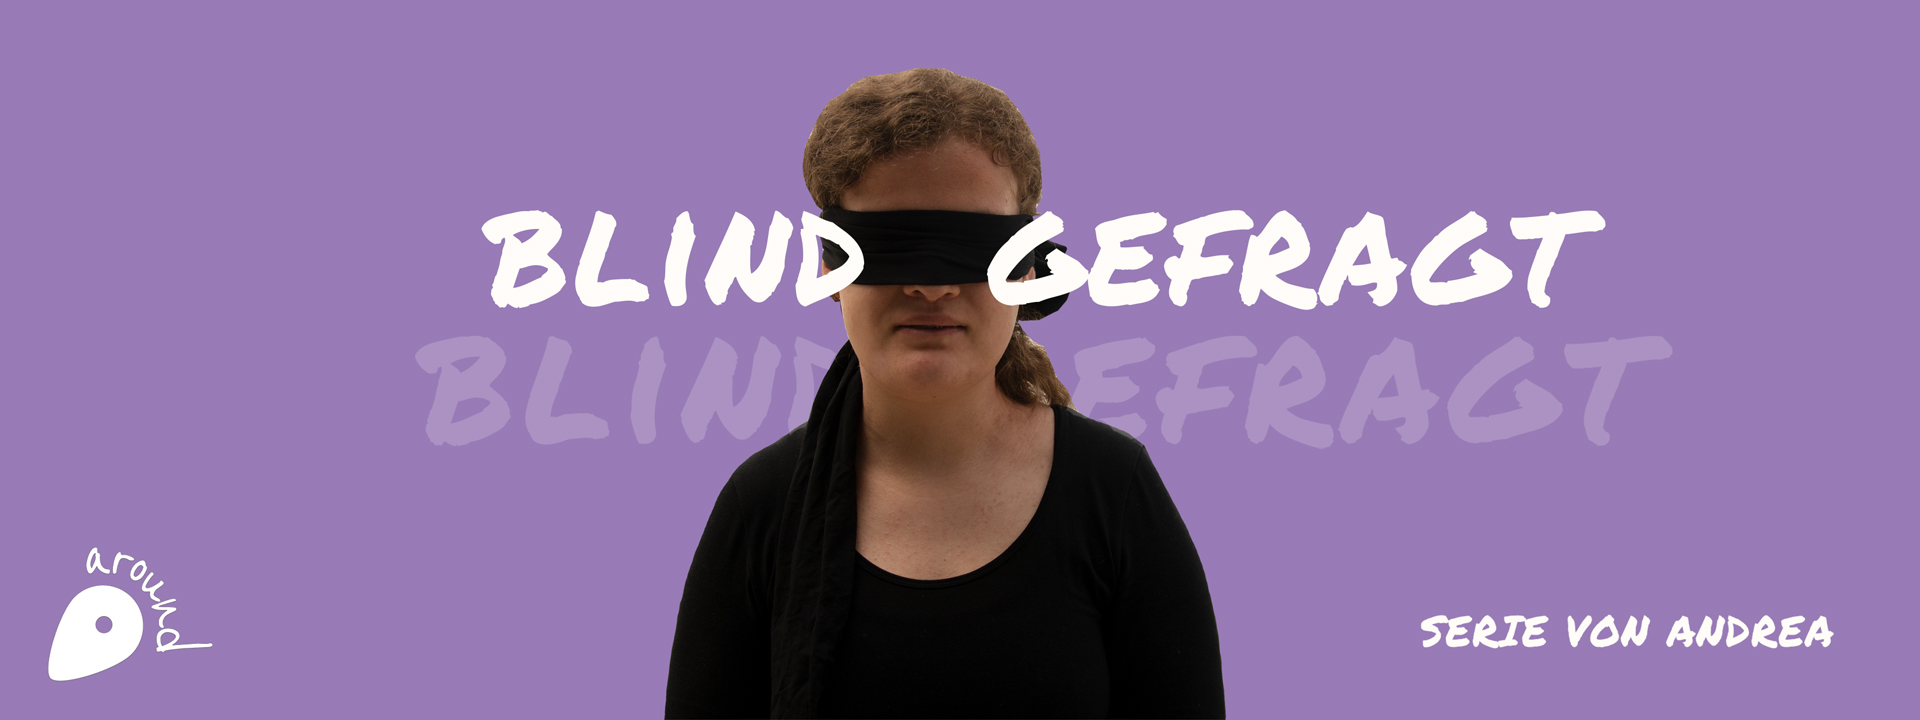 Collage mit einem Foto von Andrea mit schwarzer Augenbinde über den Augen und dem Schriftzug "Blind gefragt"